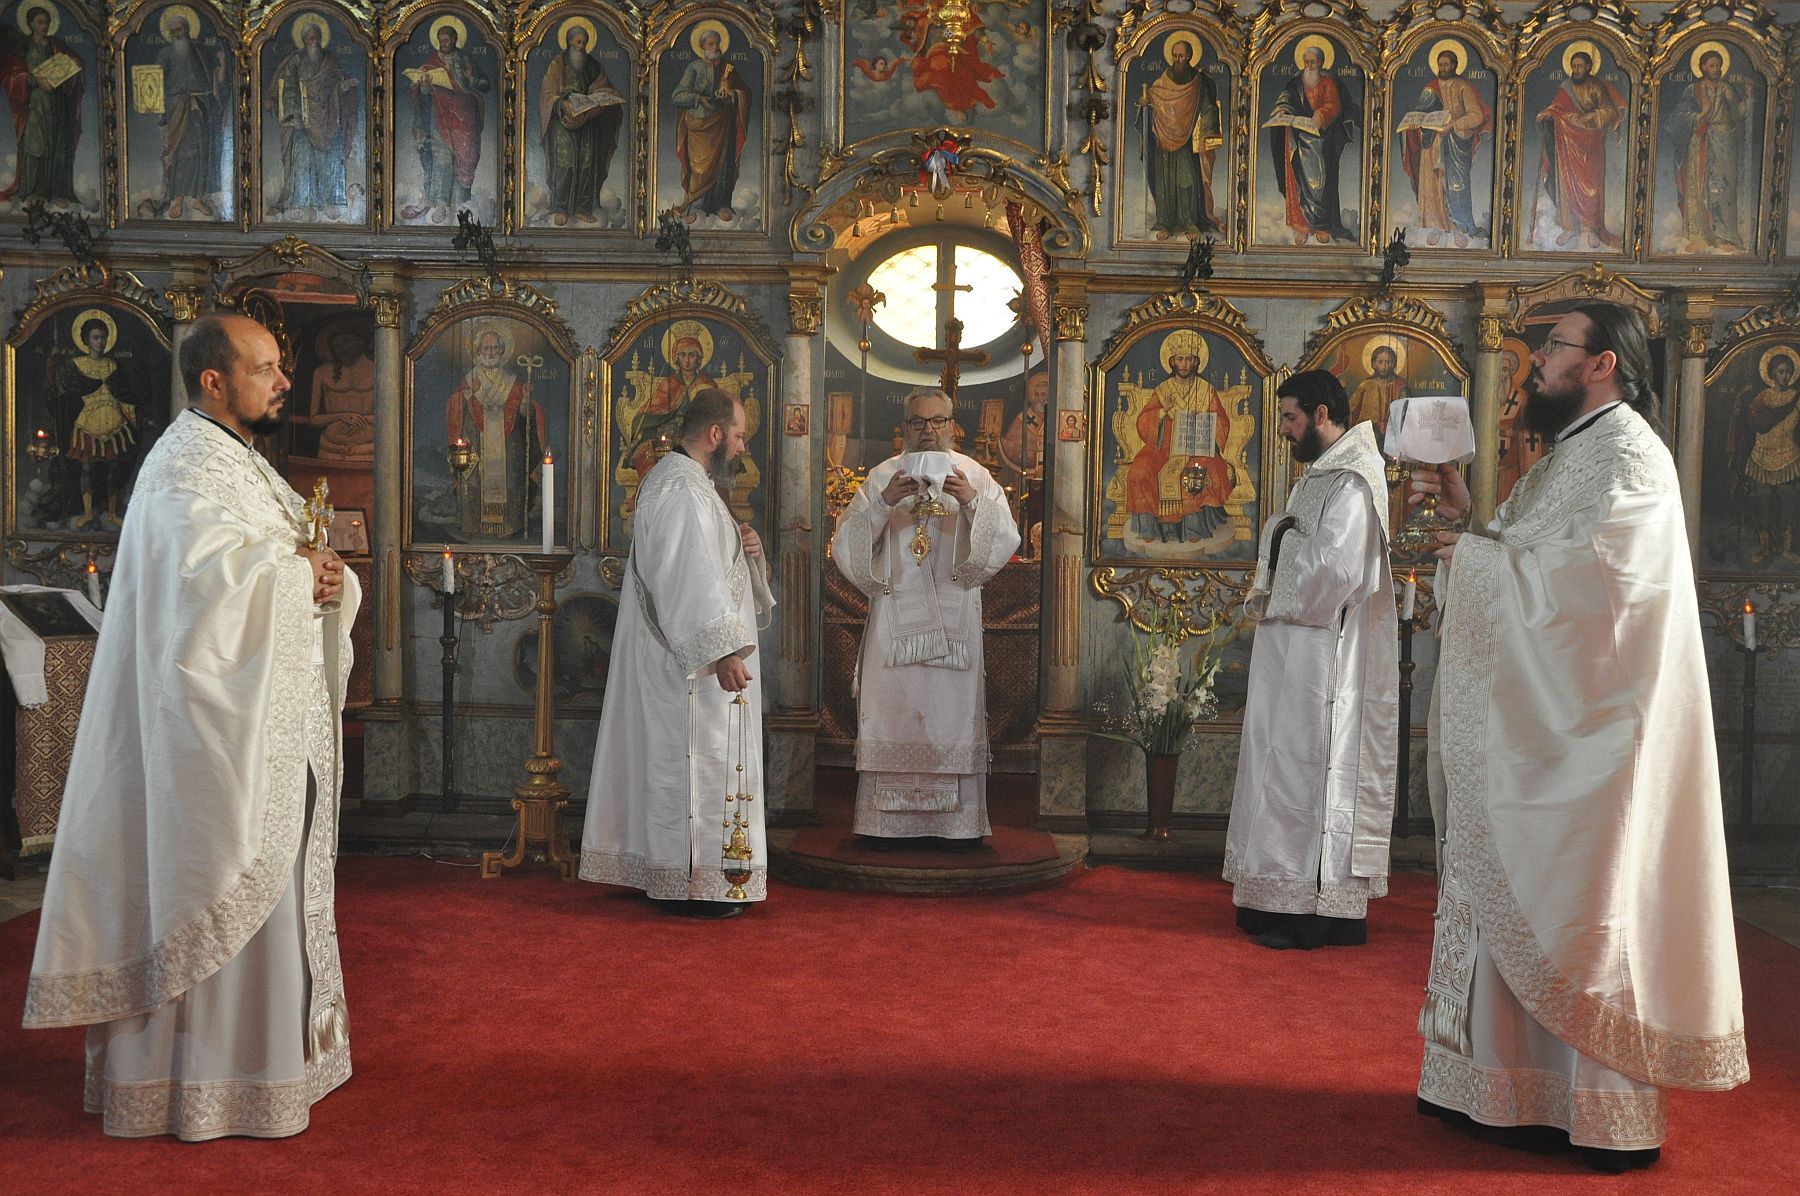 Szent Iván-napi püspöki liturgia és koljivo szentelés lesz a rác utcai templomban